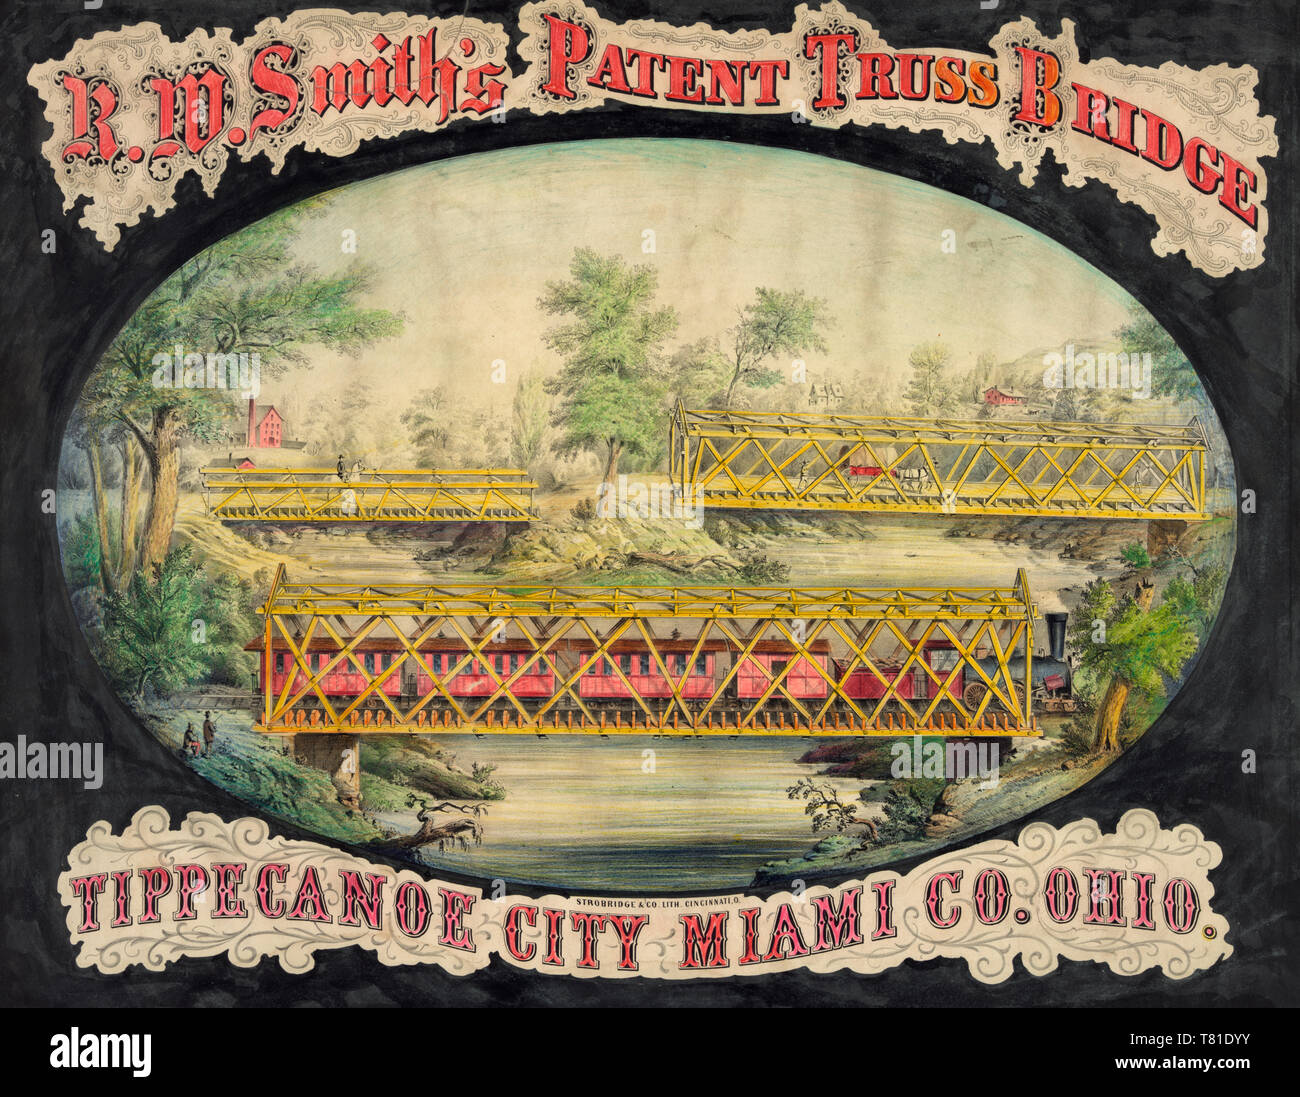 R.W. Smith's patent Truss Bridge, Ville de Tippecanoe, Miami Co., Ohio, 1868 Banque D'Images